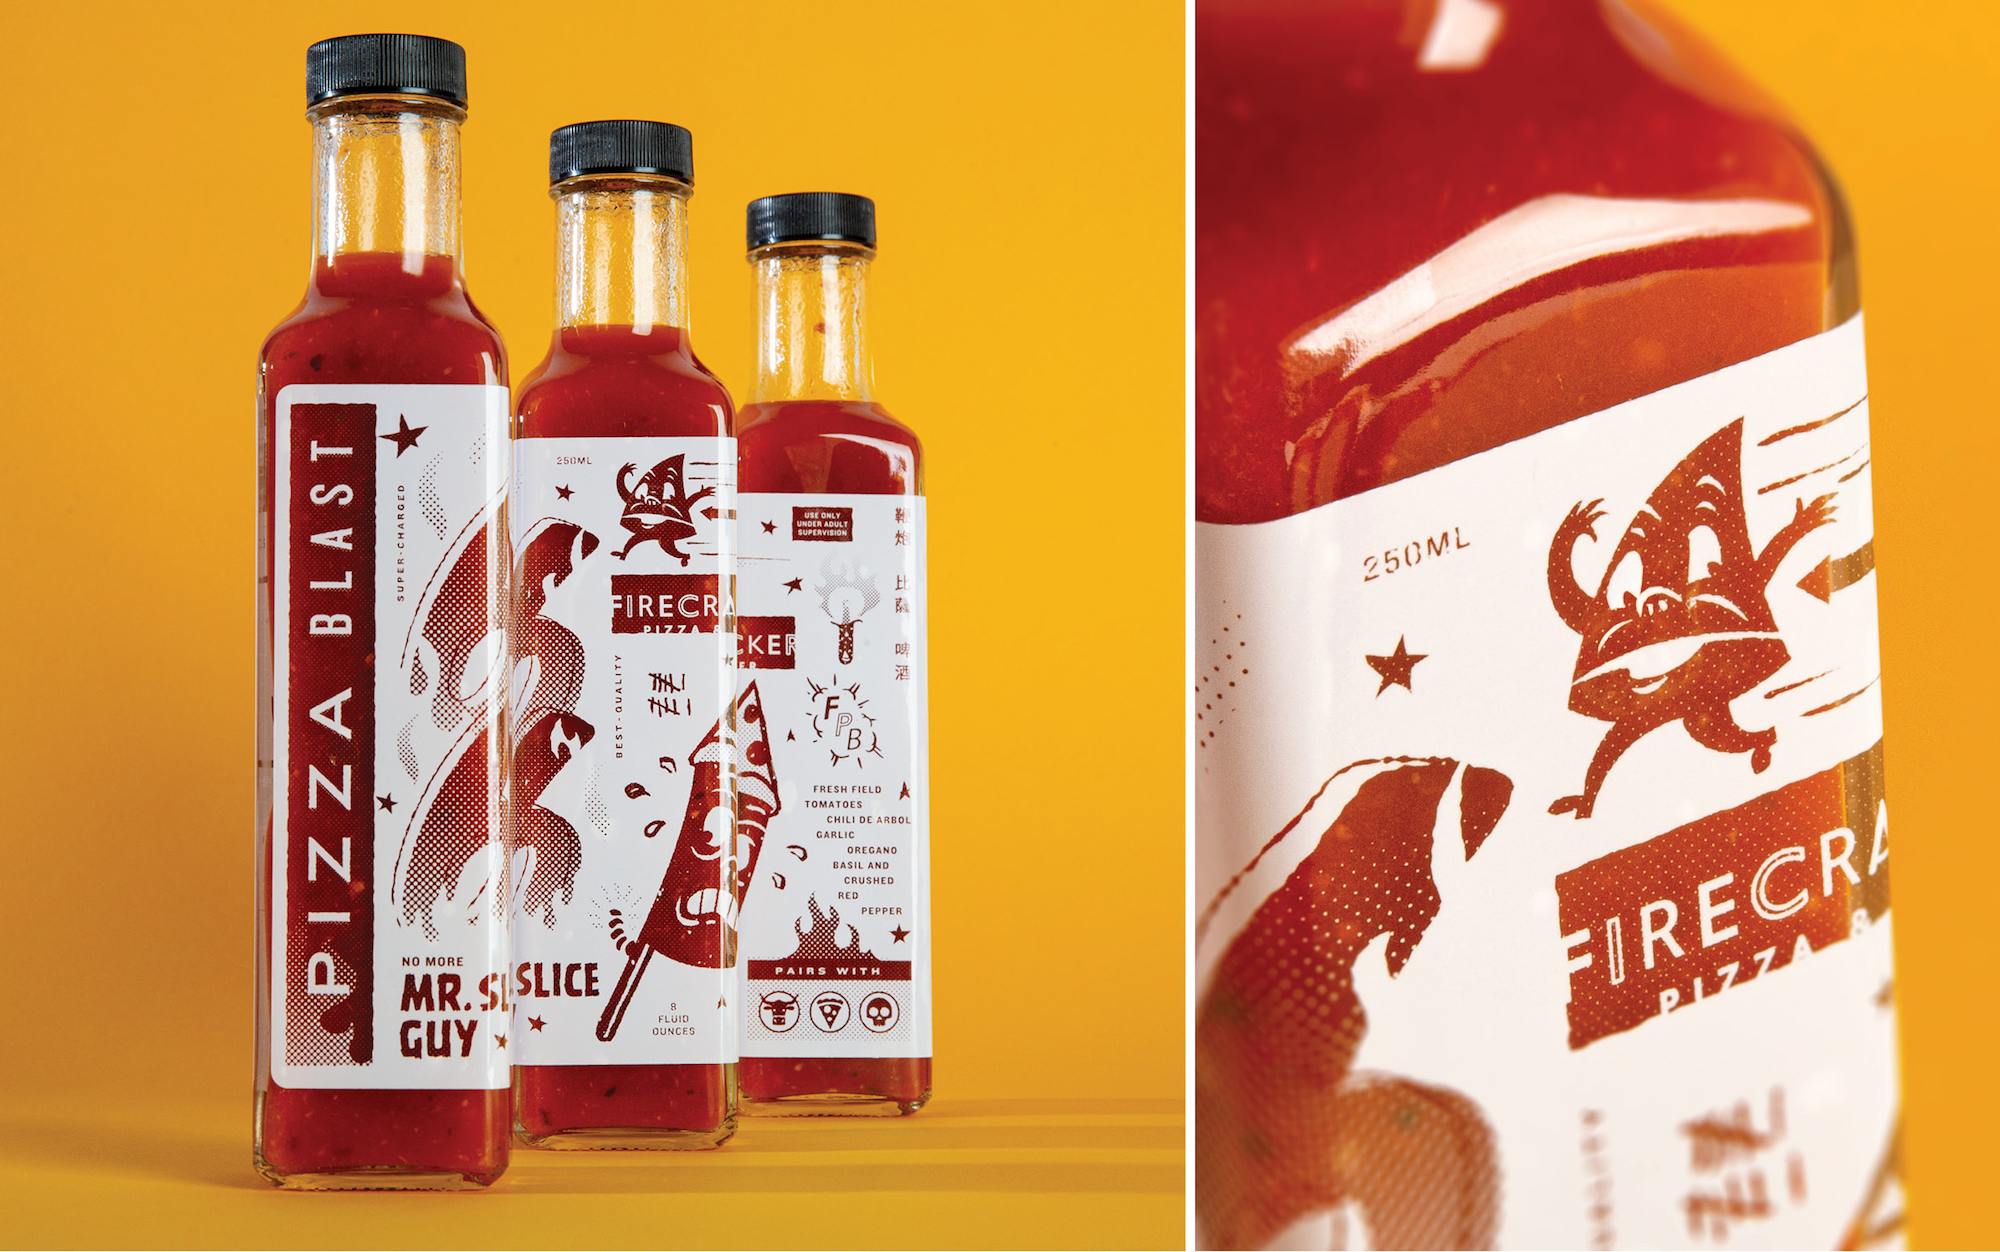 Photos of Firecracker hot sauce packaging